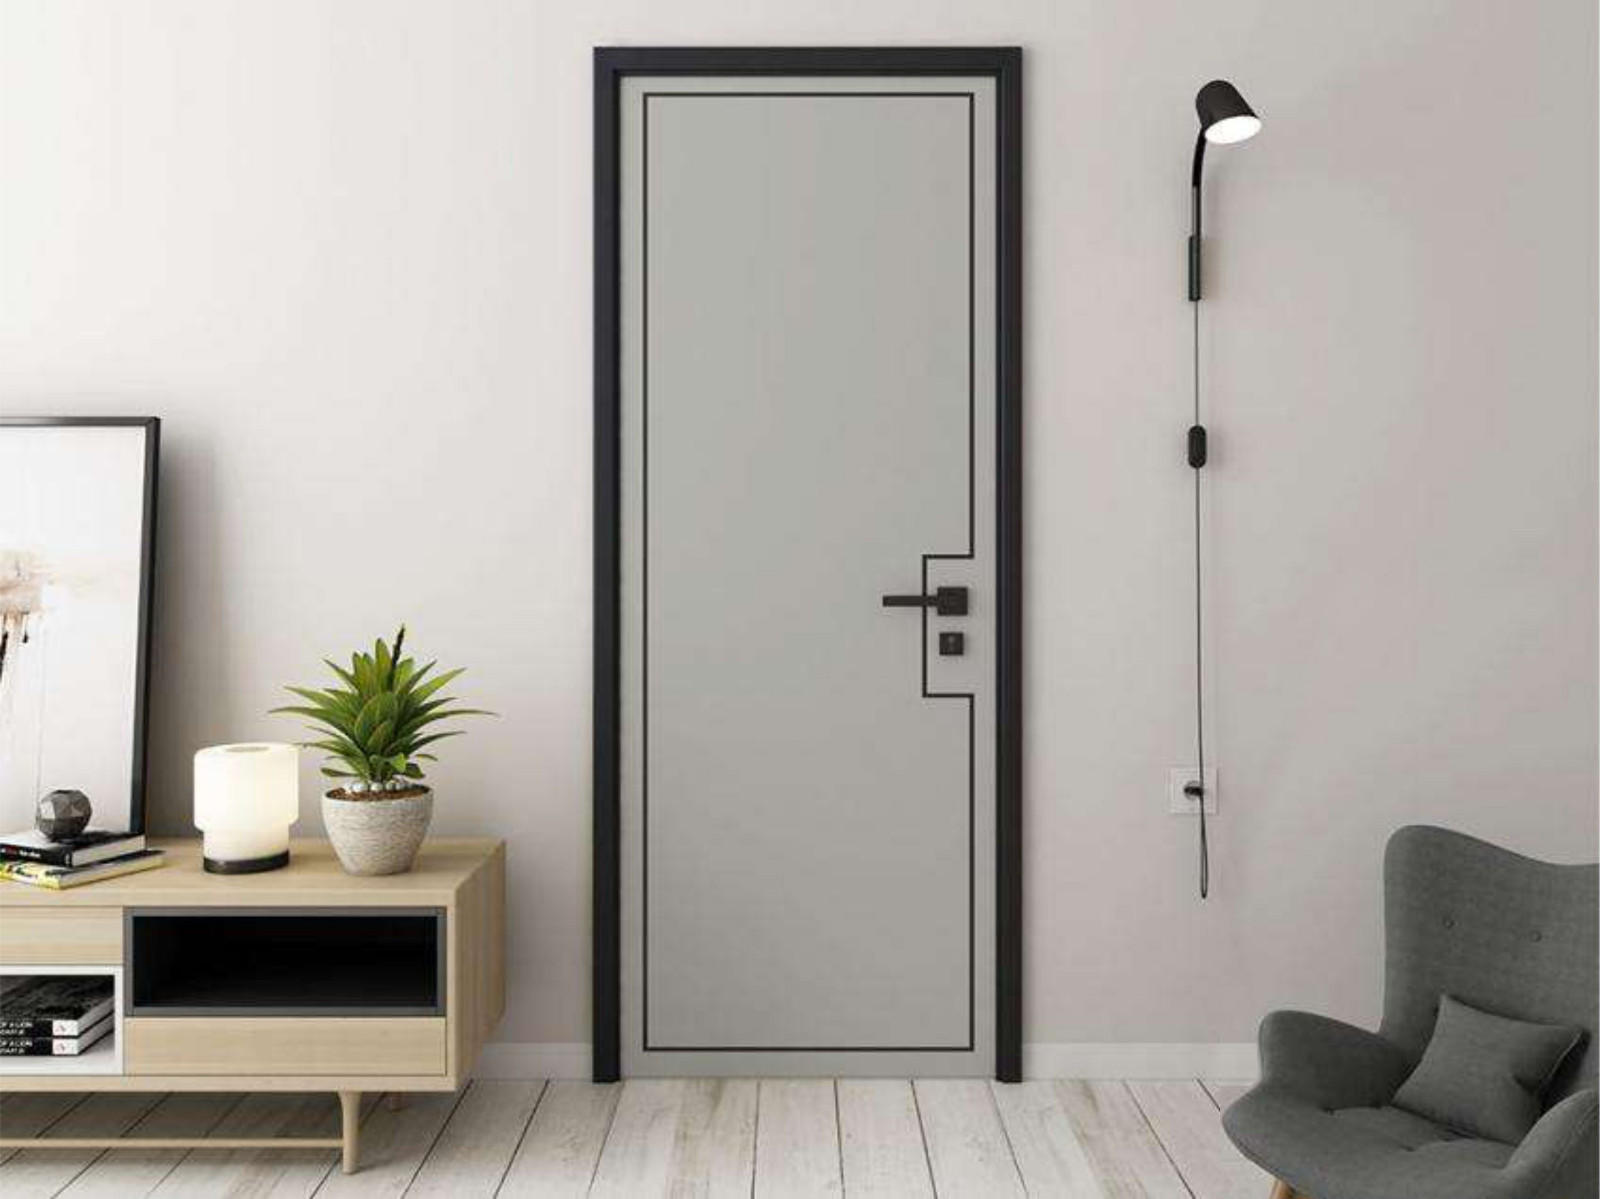 Casen hdf doors wholesale for bedroom